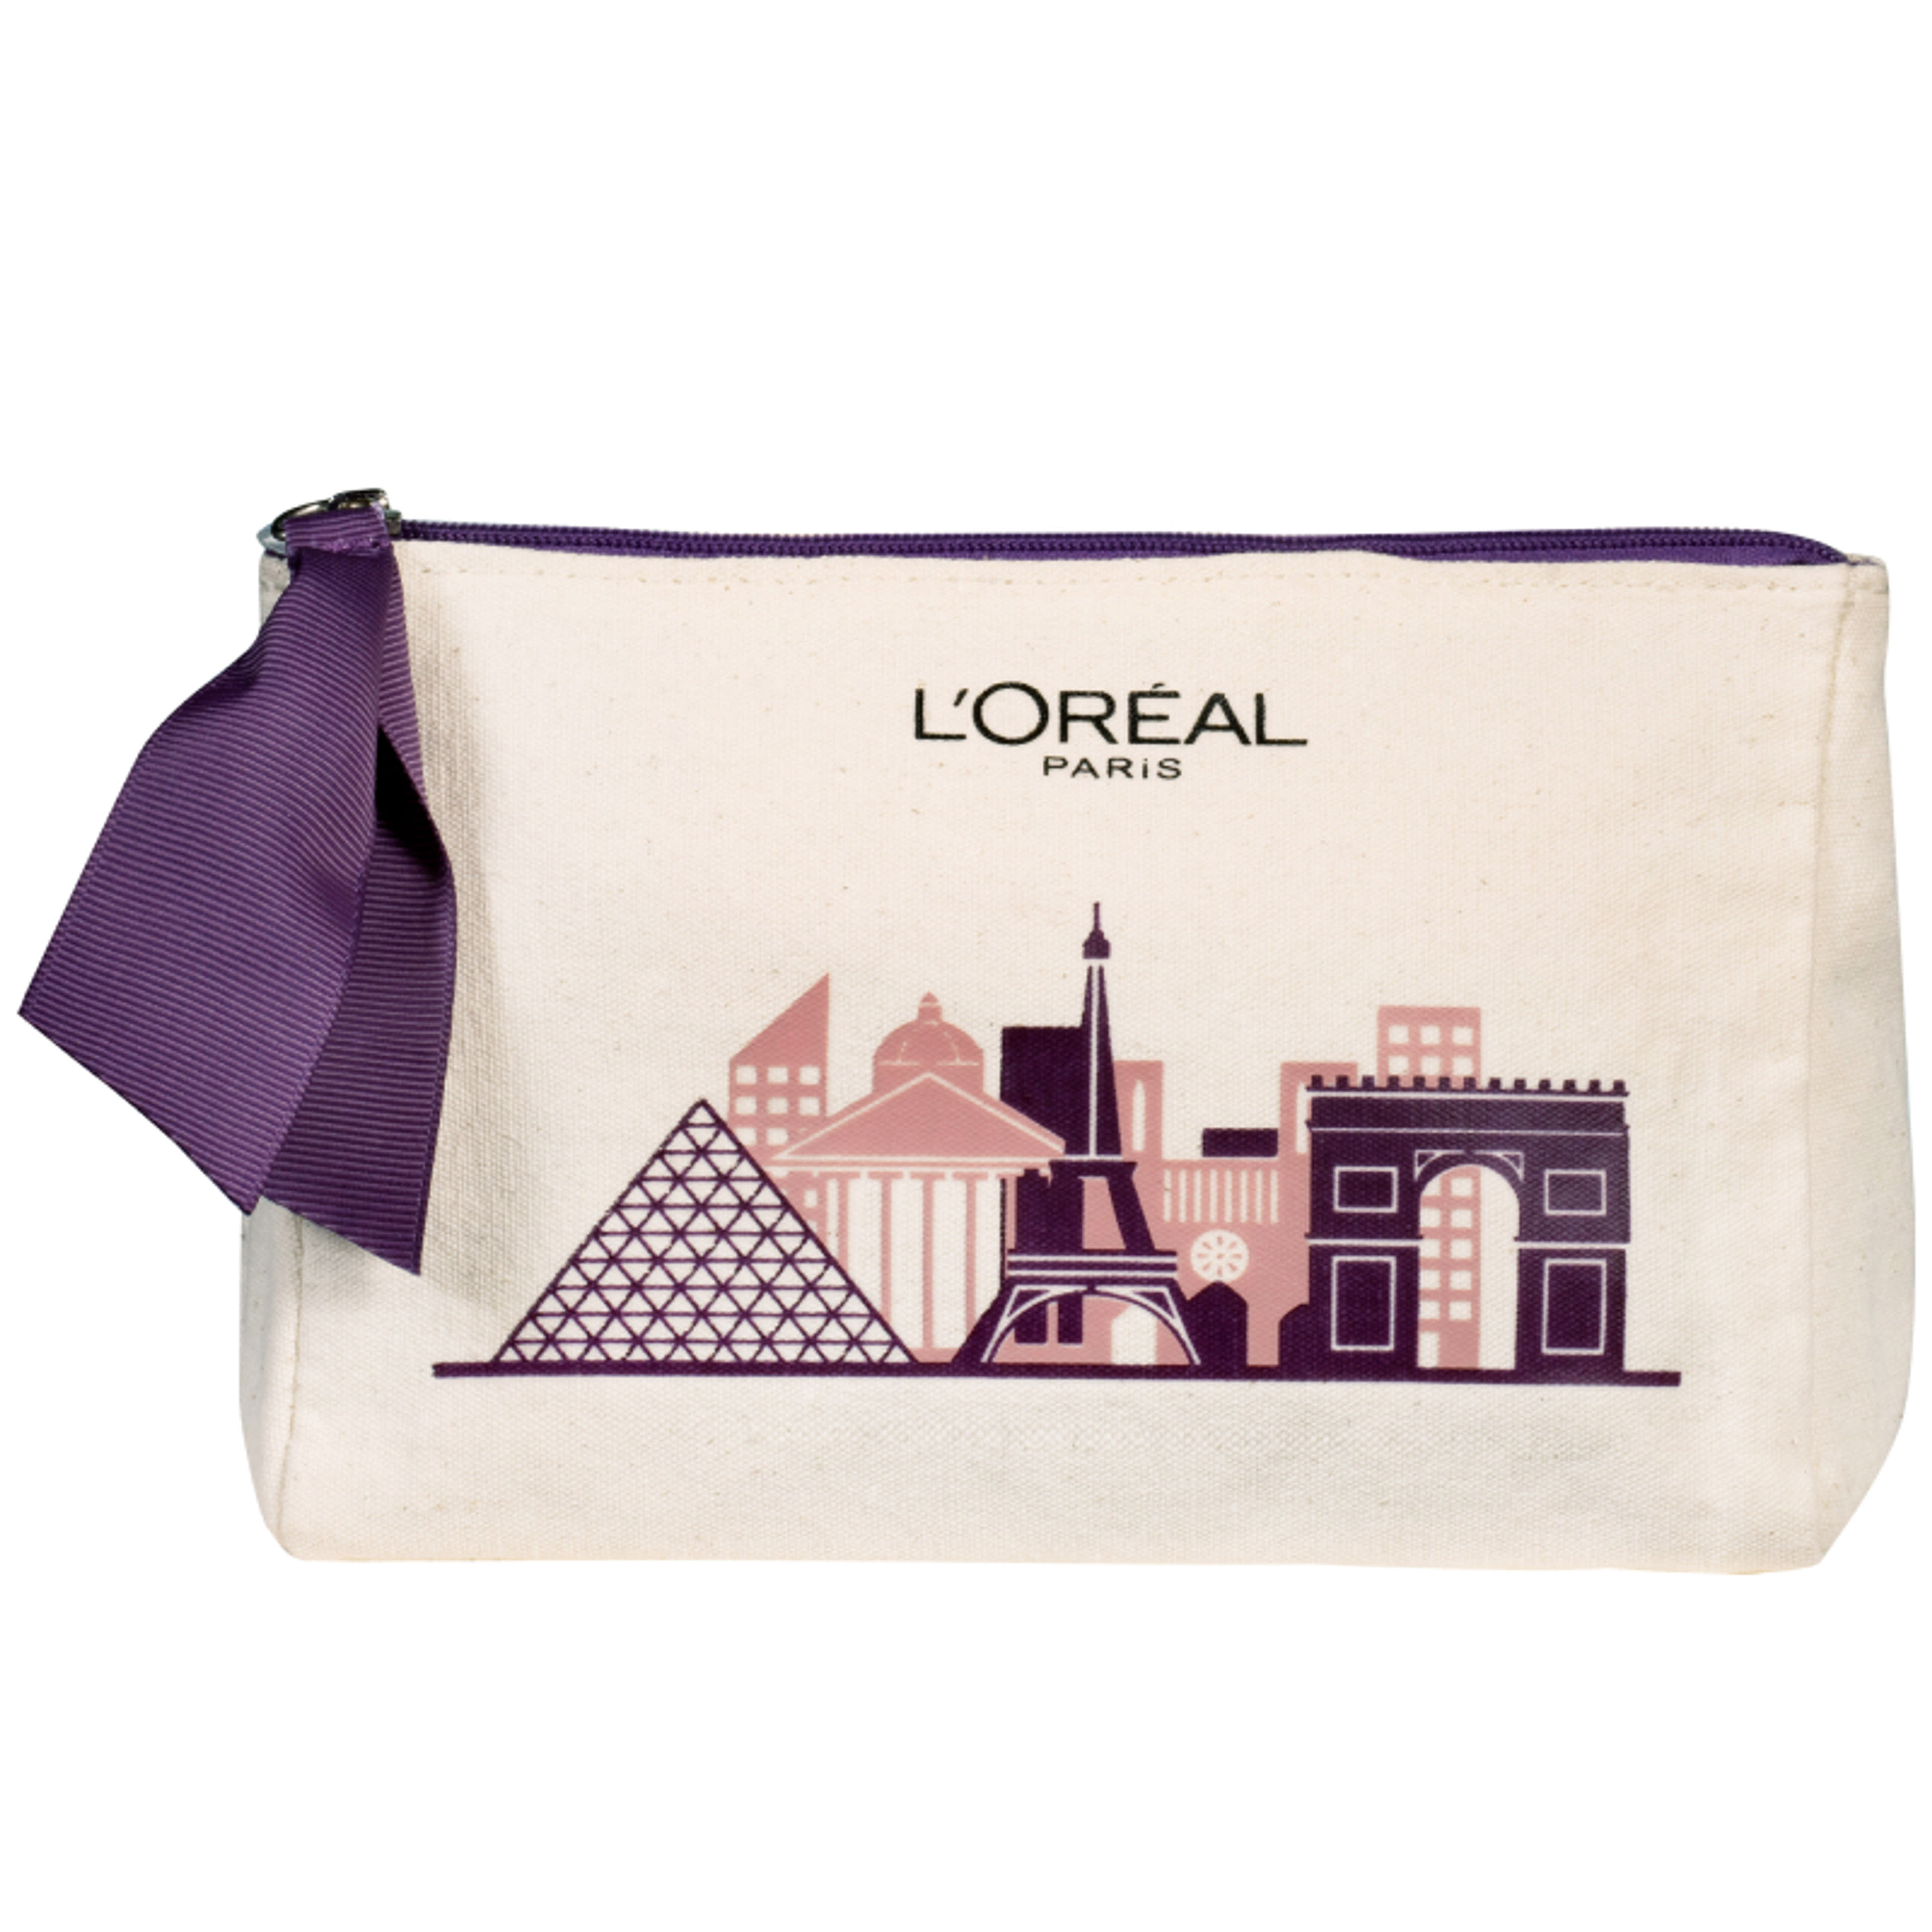 L'Oréal Paris kozmetikai táska - 1 db-1